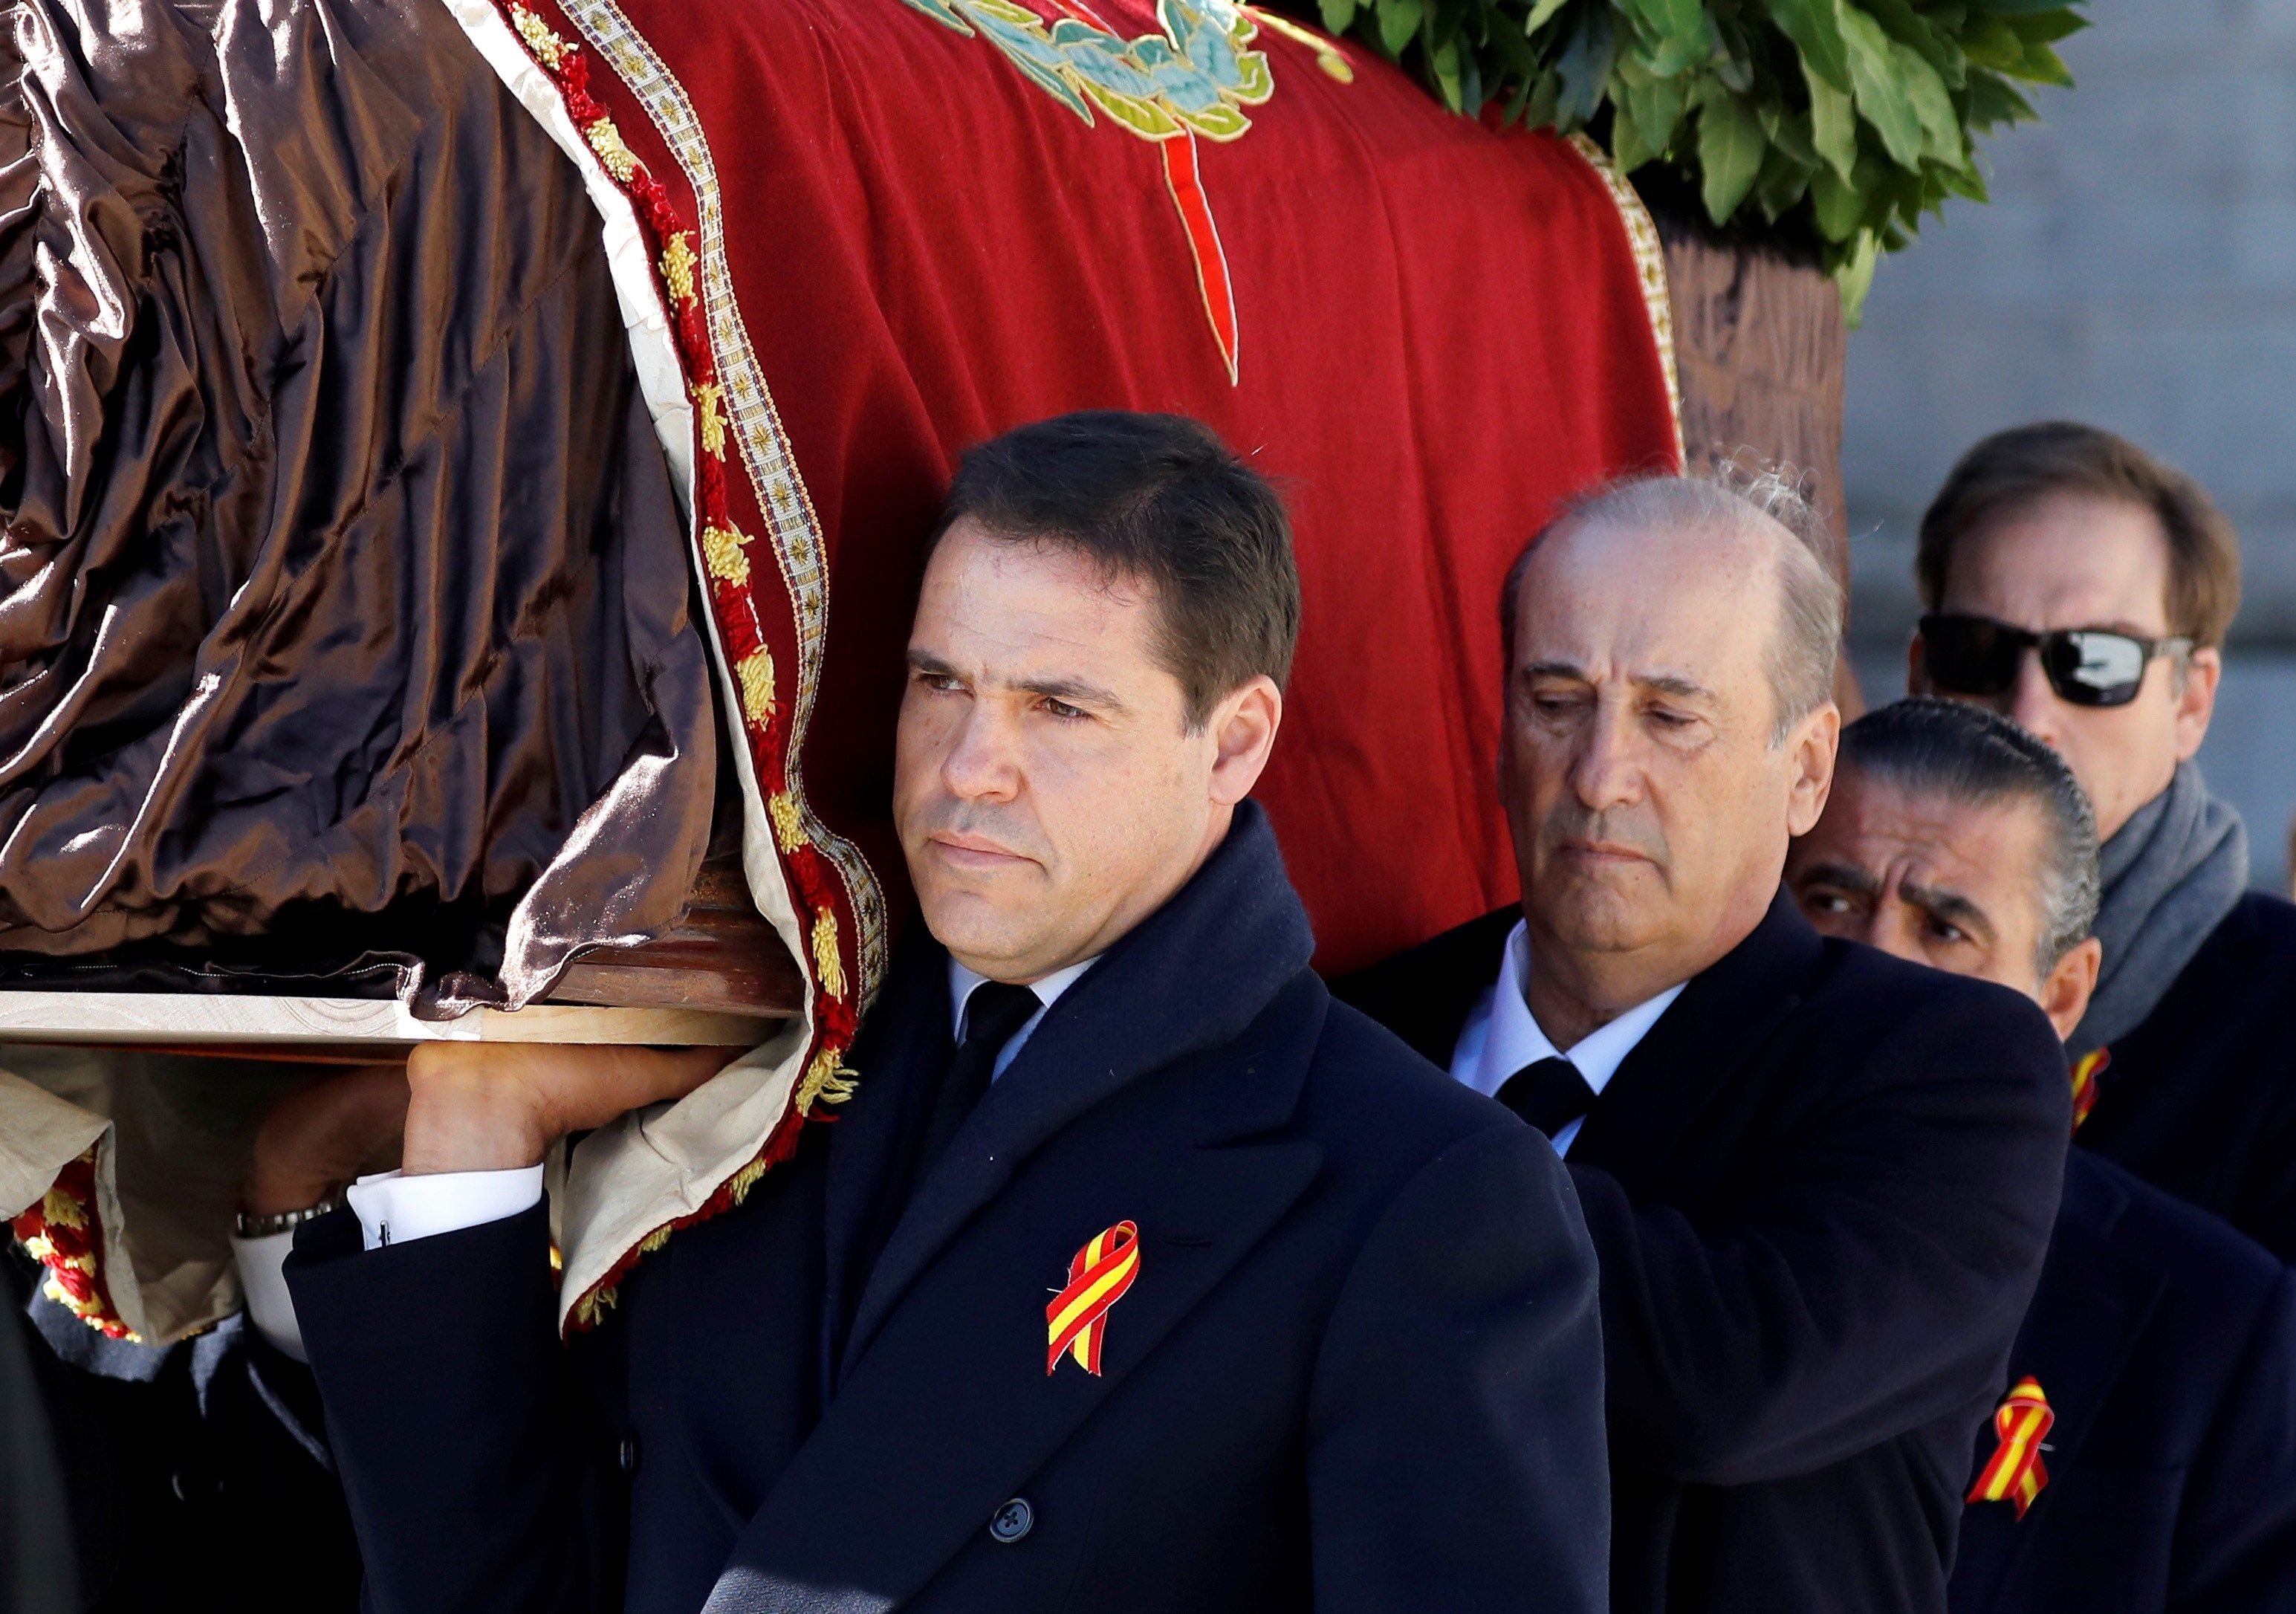 Luis Alfonso de Borbón en l'exhumació de Franco / EP